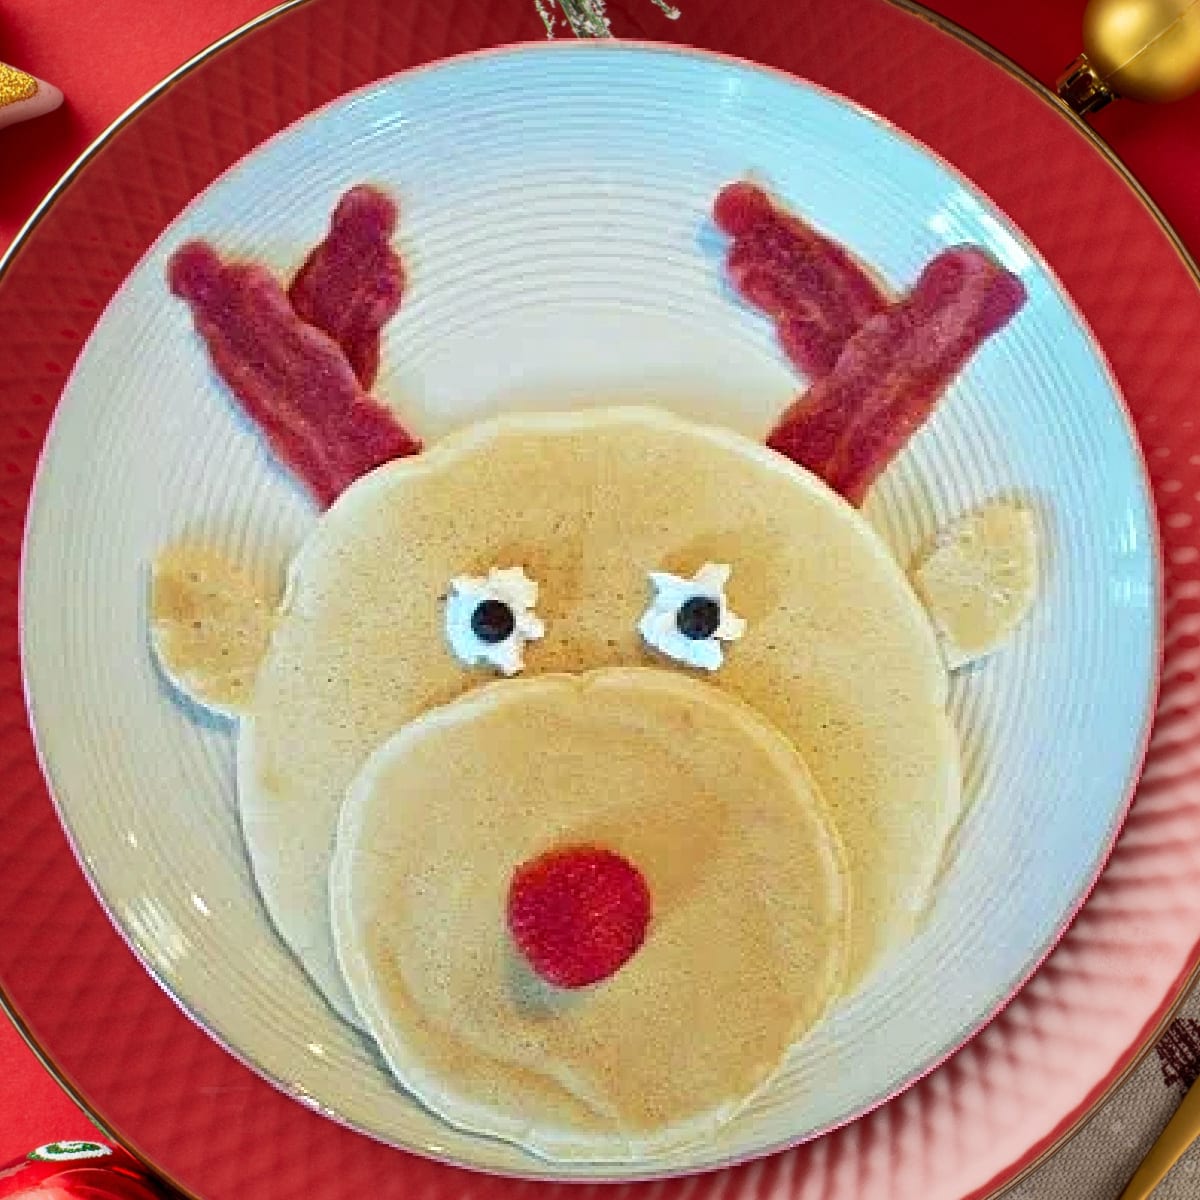 Reindeer Pancakes